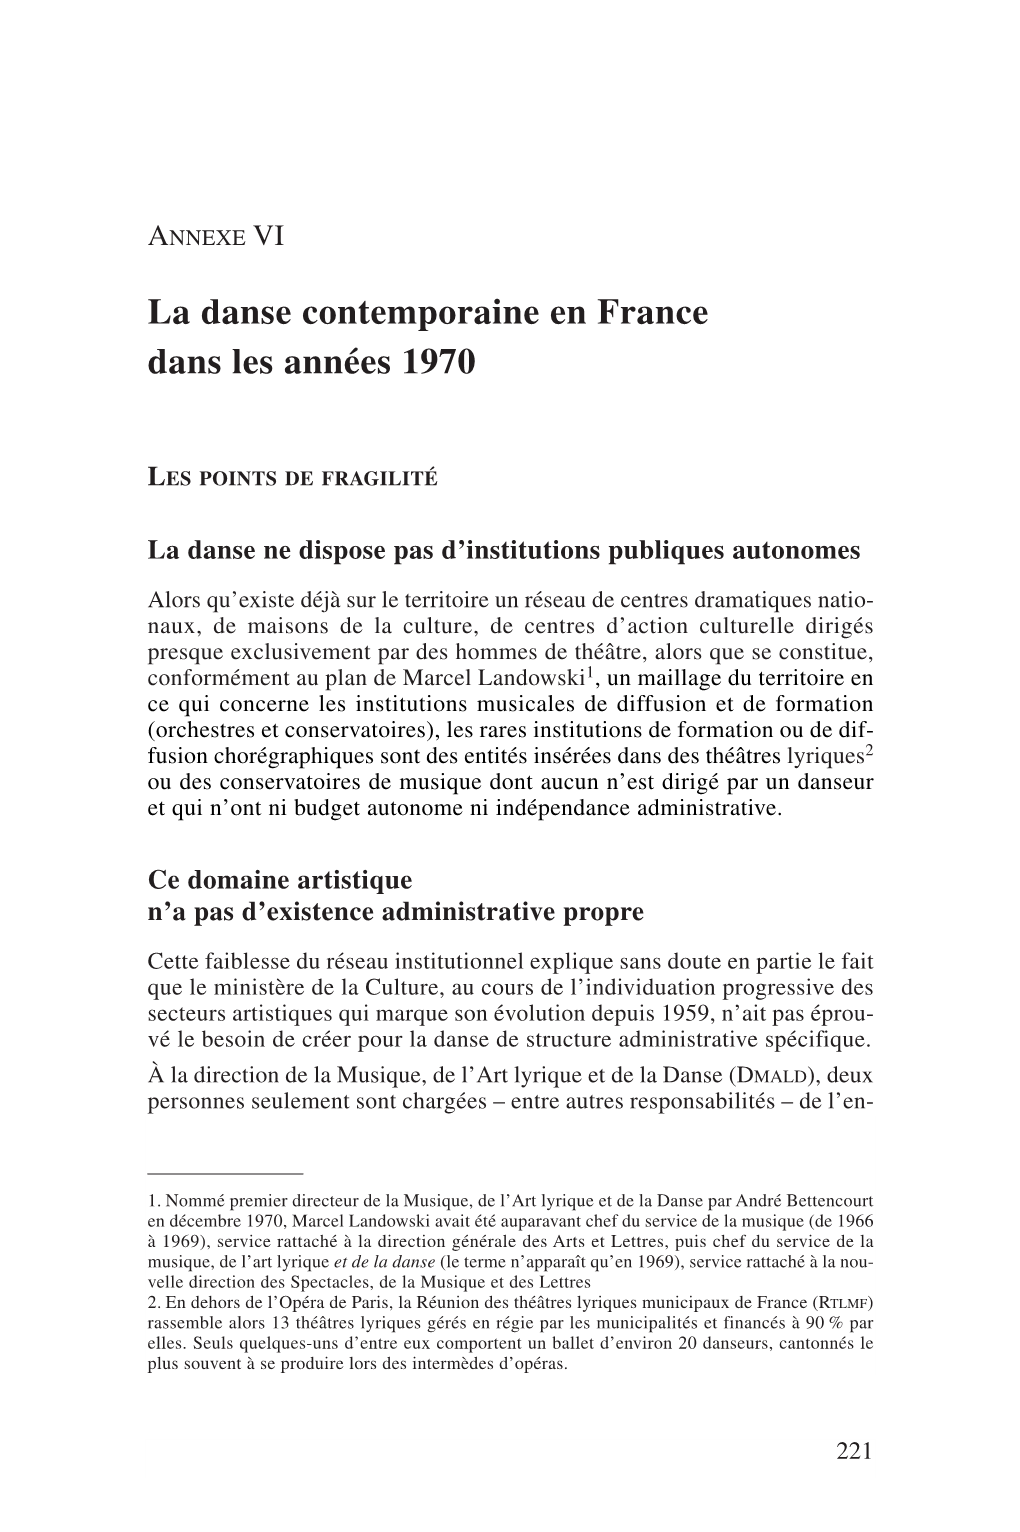 La Danse Contemporaine En France Dans Les Années 1970